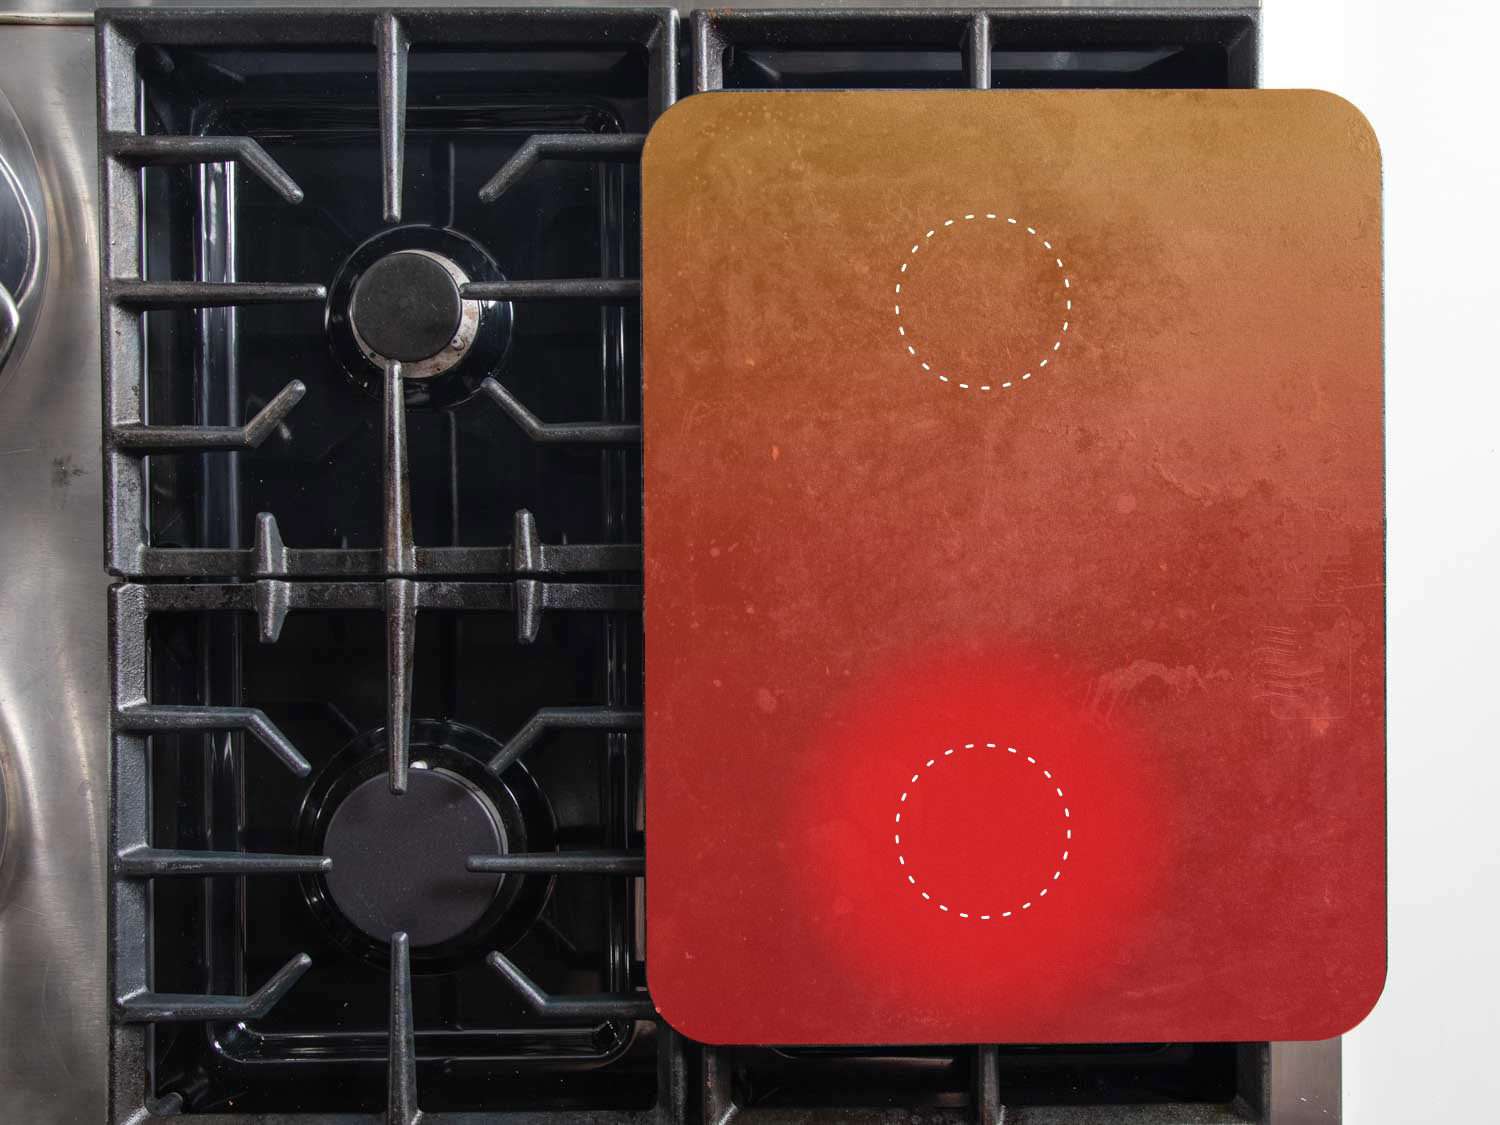 顶视图烘焙钢加热只有在前面的燃烧器,这样热量最强烈的在前面,辐射更轻。